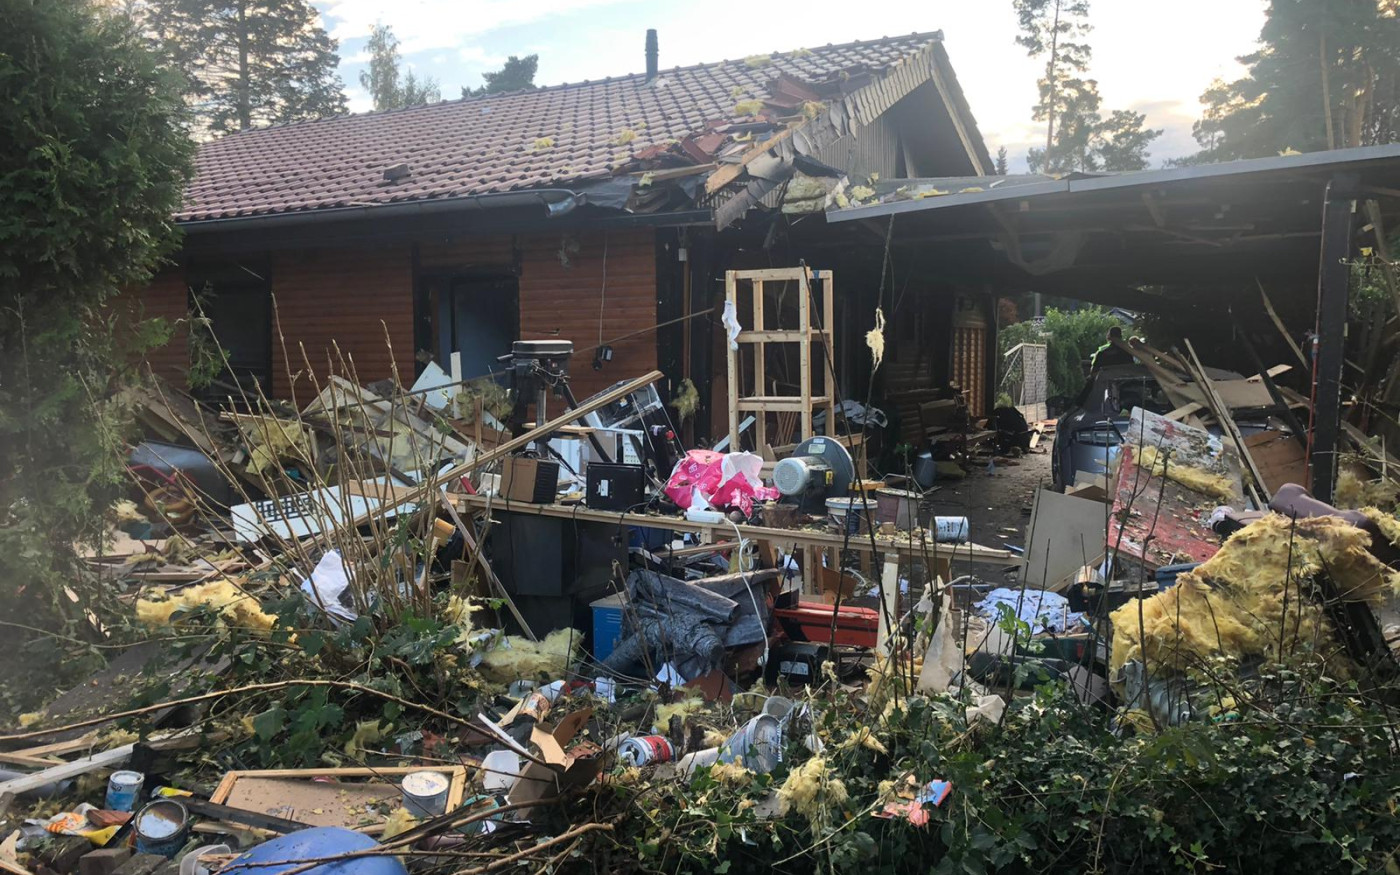 Explosion am Tankumsee - Mann (49) schwer verletzt - Schuppen völlig zerstört, insgesamt vier Häuser beschädigt